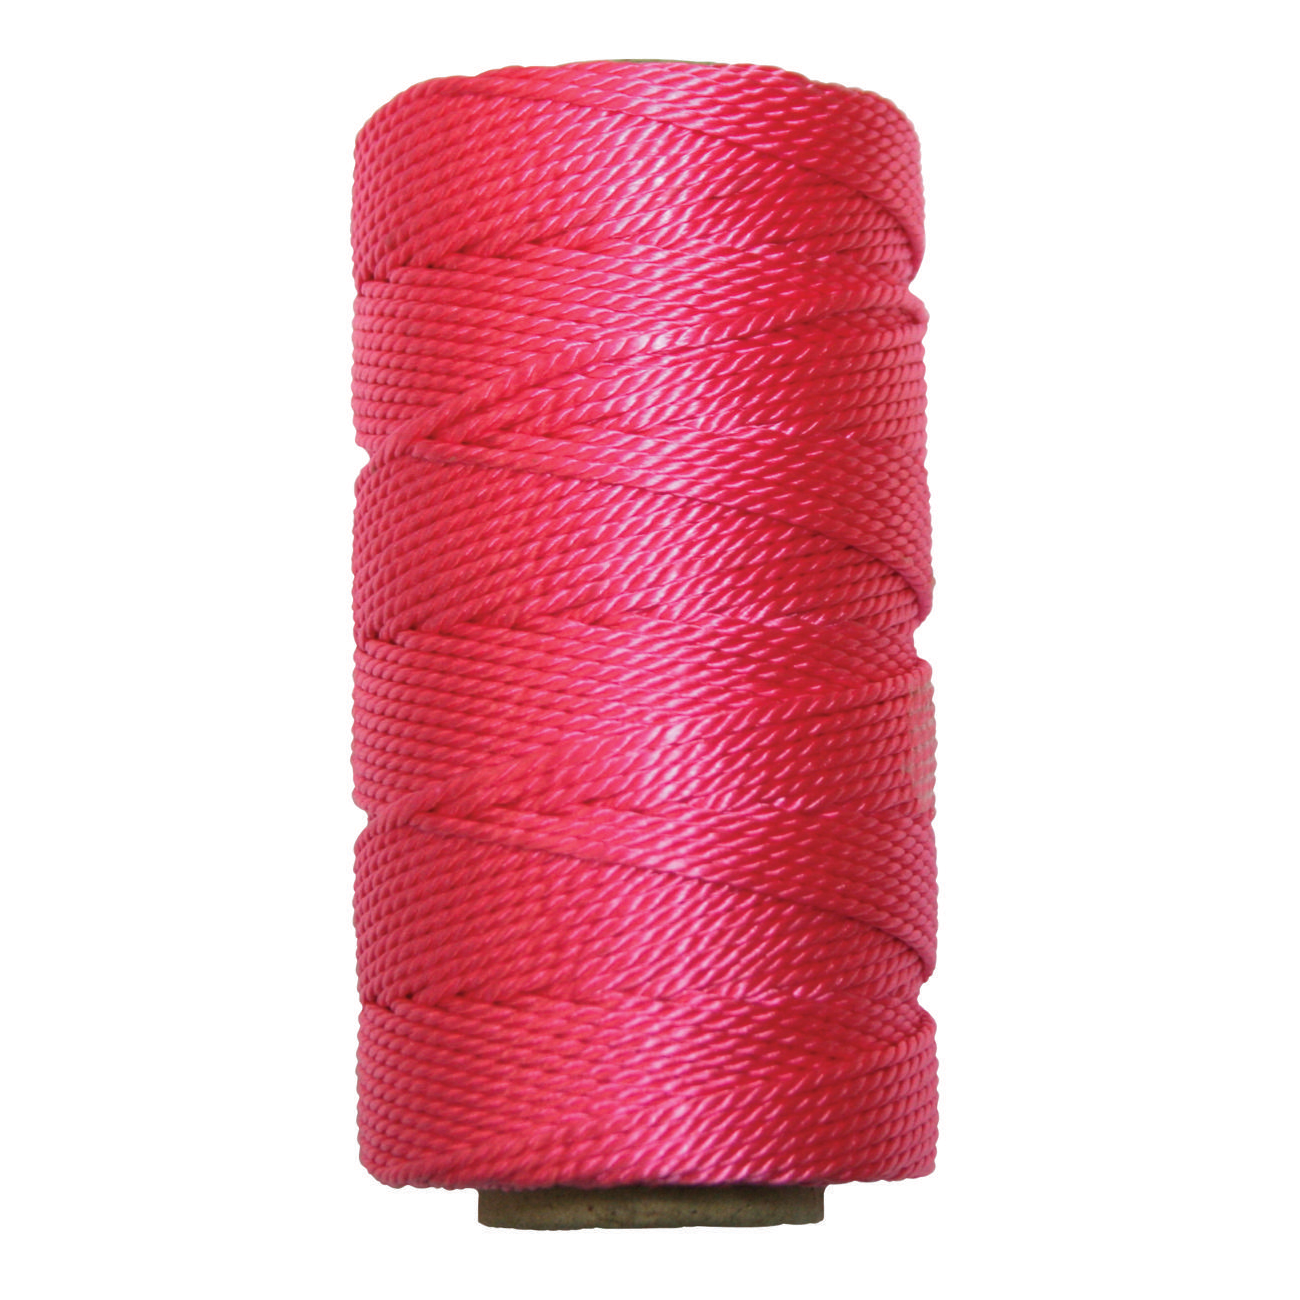 #18x500' Twisted Nylon Mason Twine, Pink